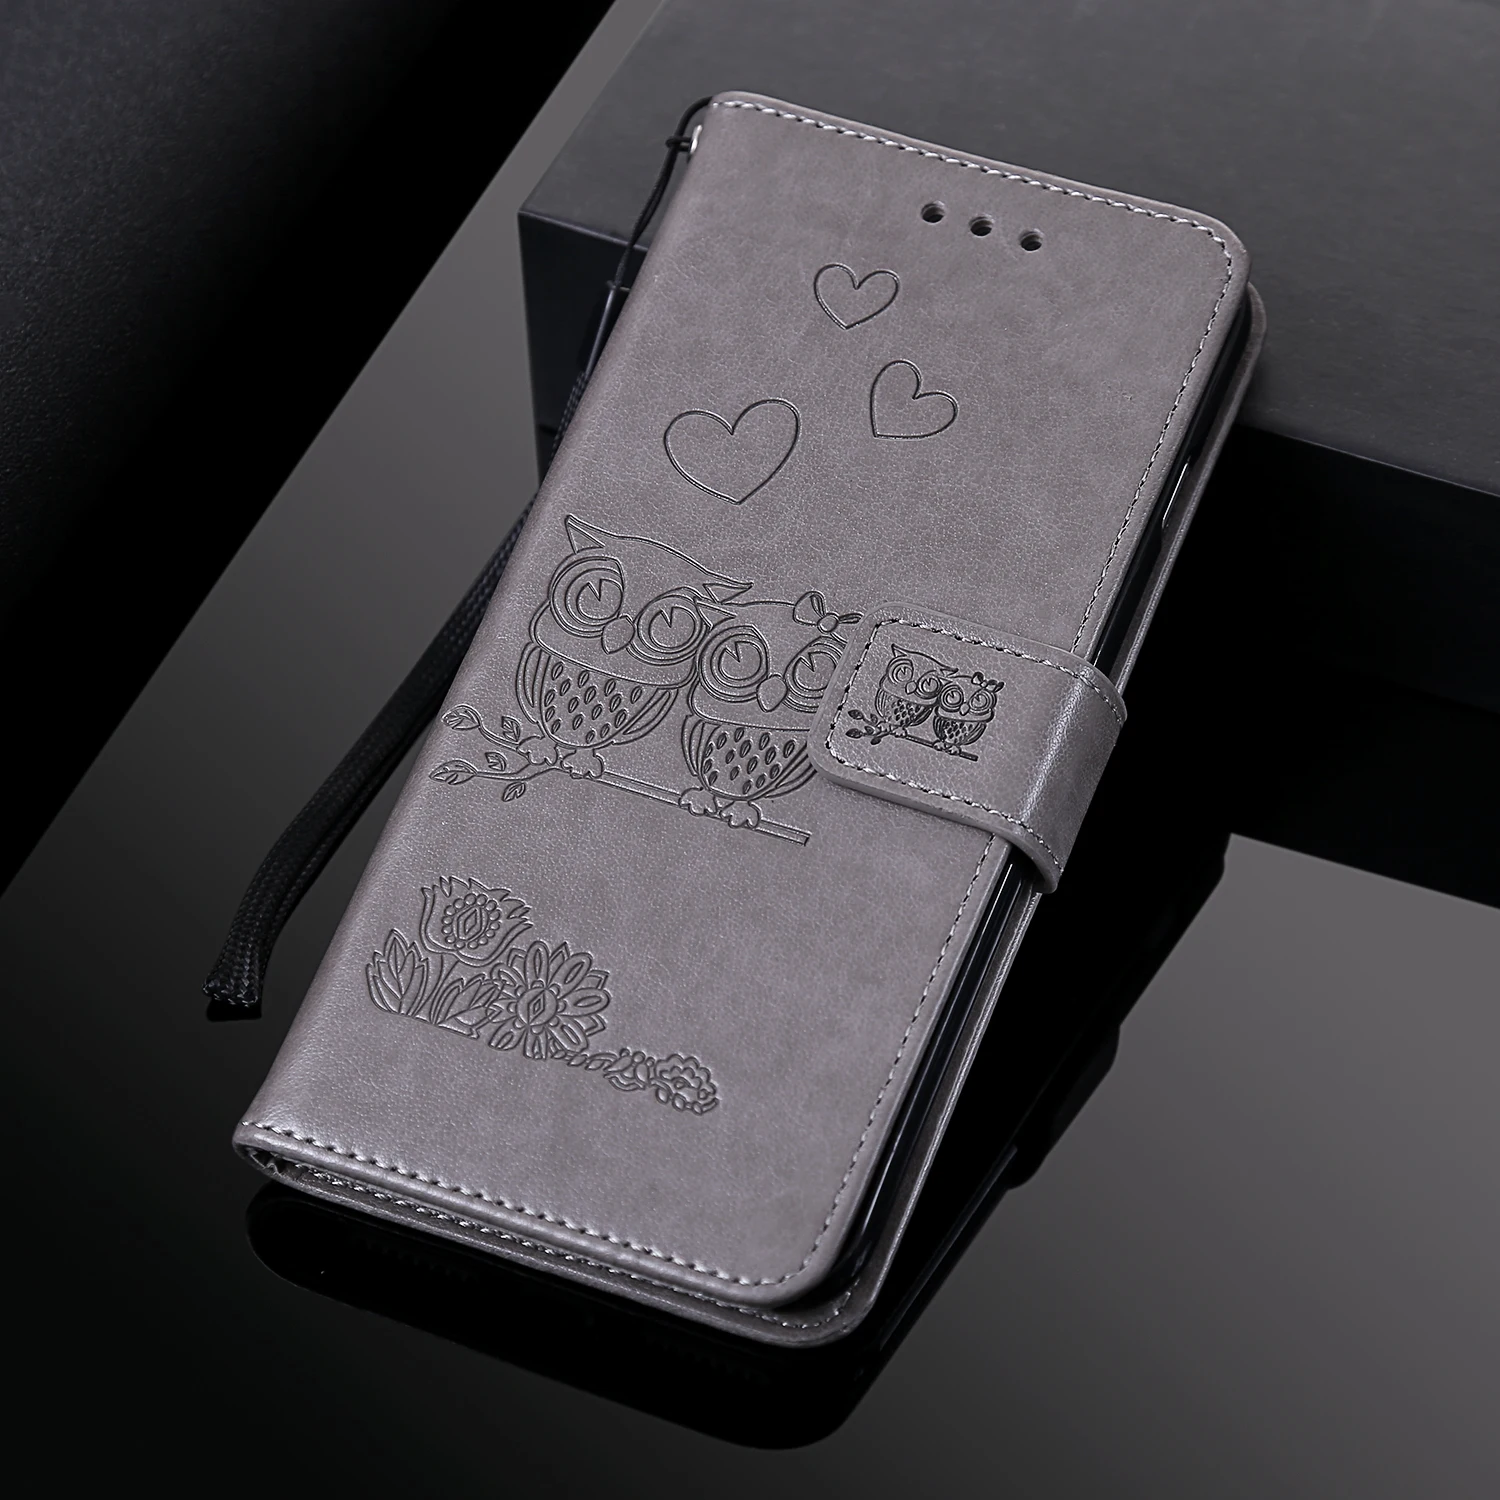 Dễ Thương Dập Nổi Tình Yêu Con Cú Bao Da Ví Da Cho Huawei Y6 Y7 2019 P10 P20 P30 Lite Danh Dự 20 Pro 9 10 Lite 8A 8X Flip Cover Găng Tay cute phone cases huawei Cases For Huawei